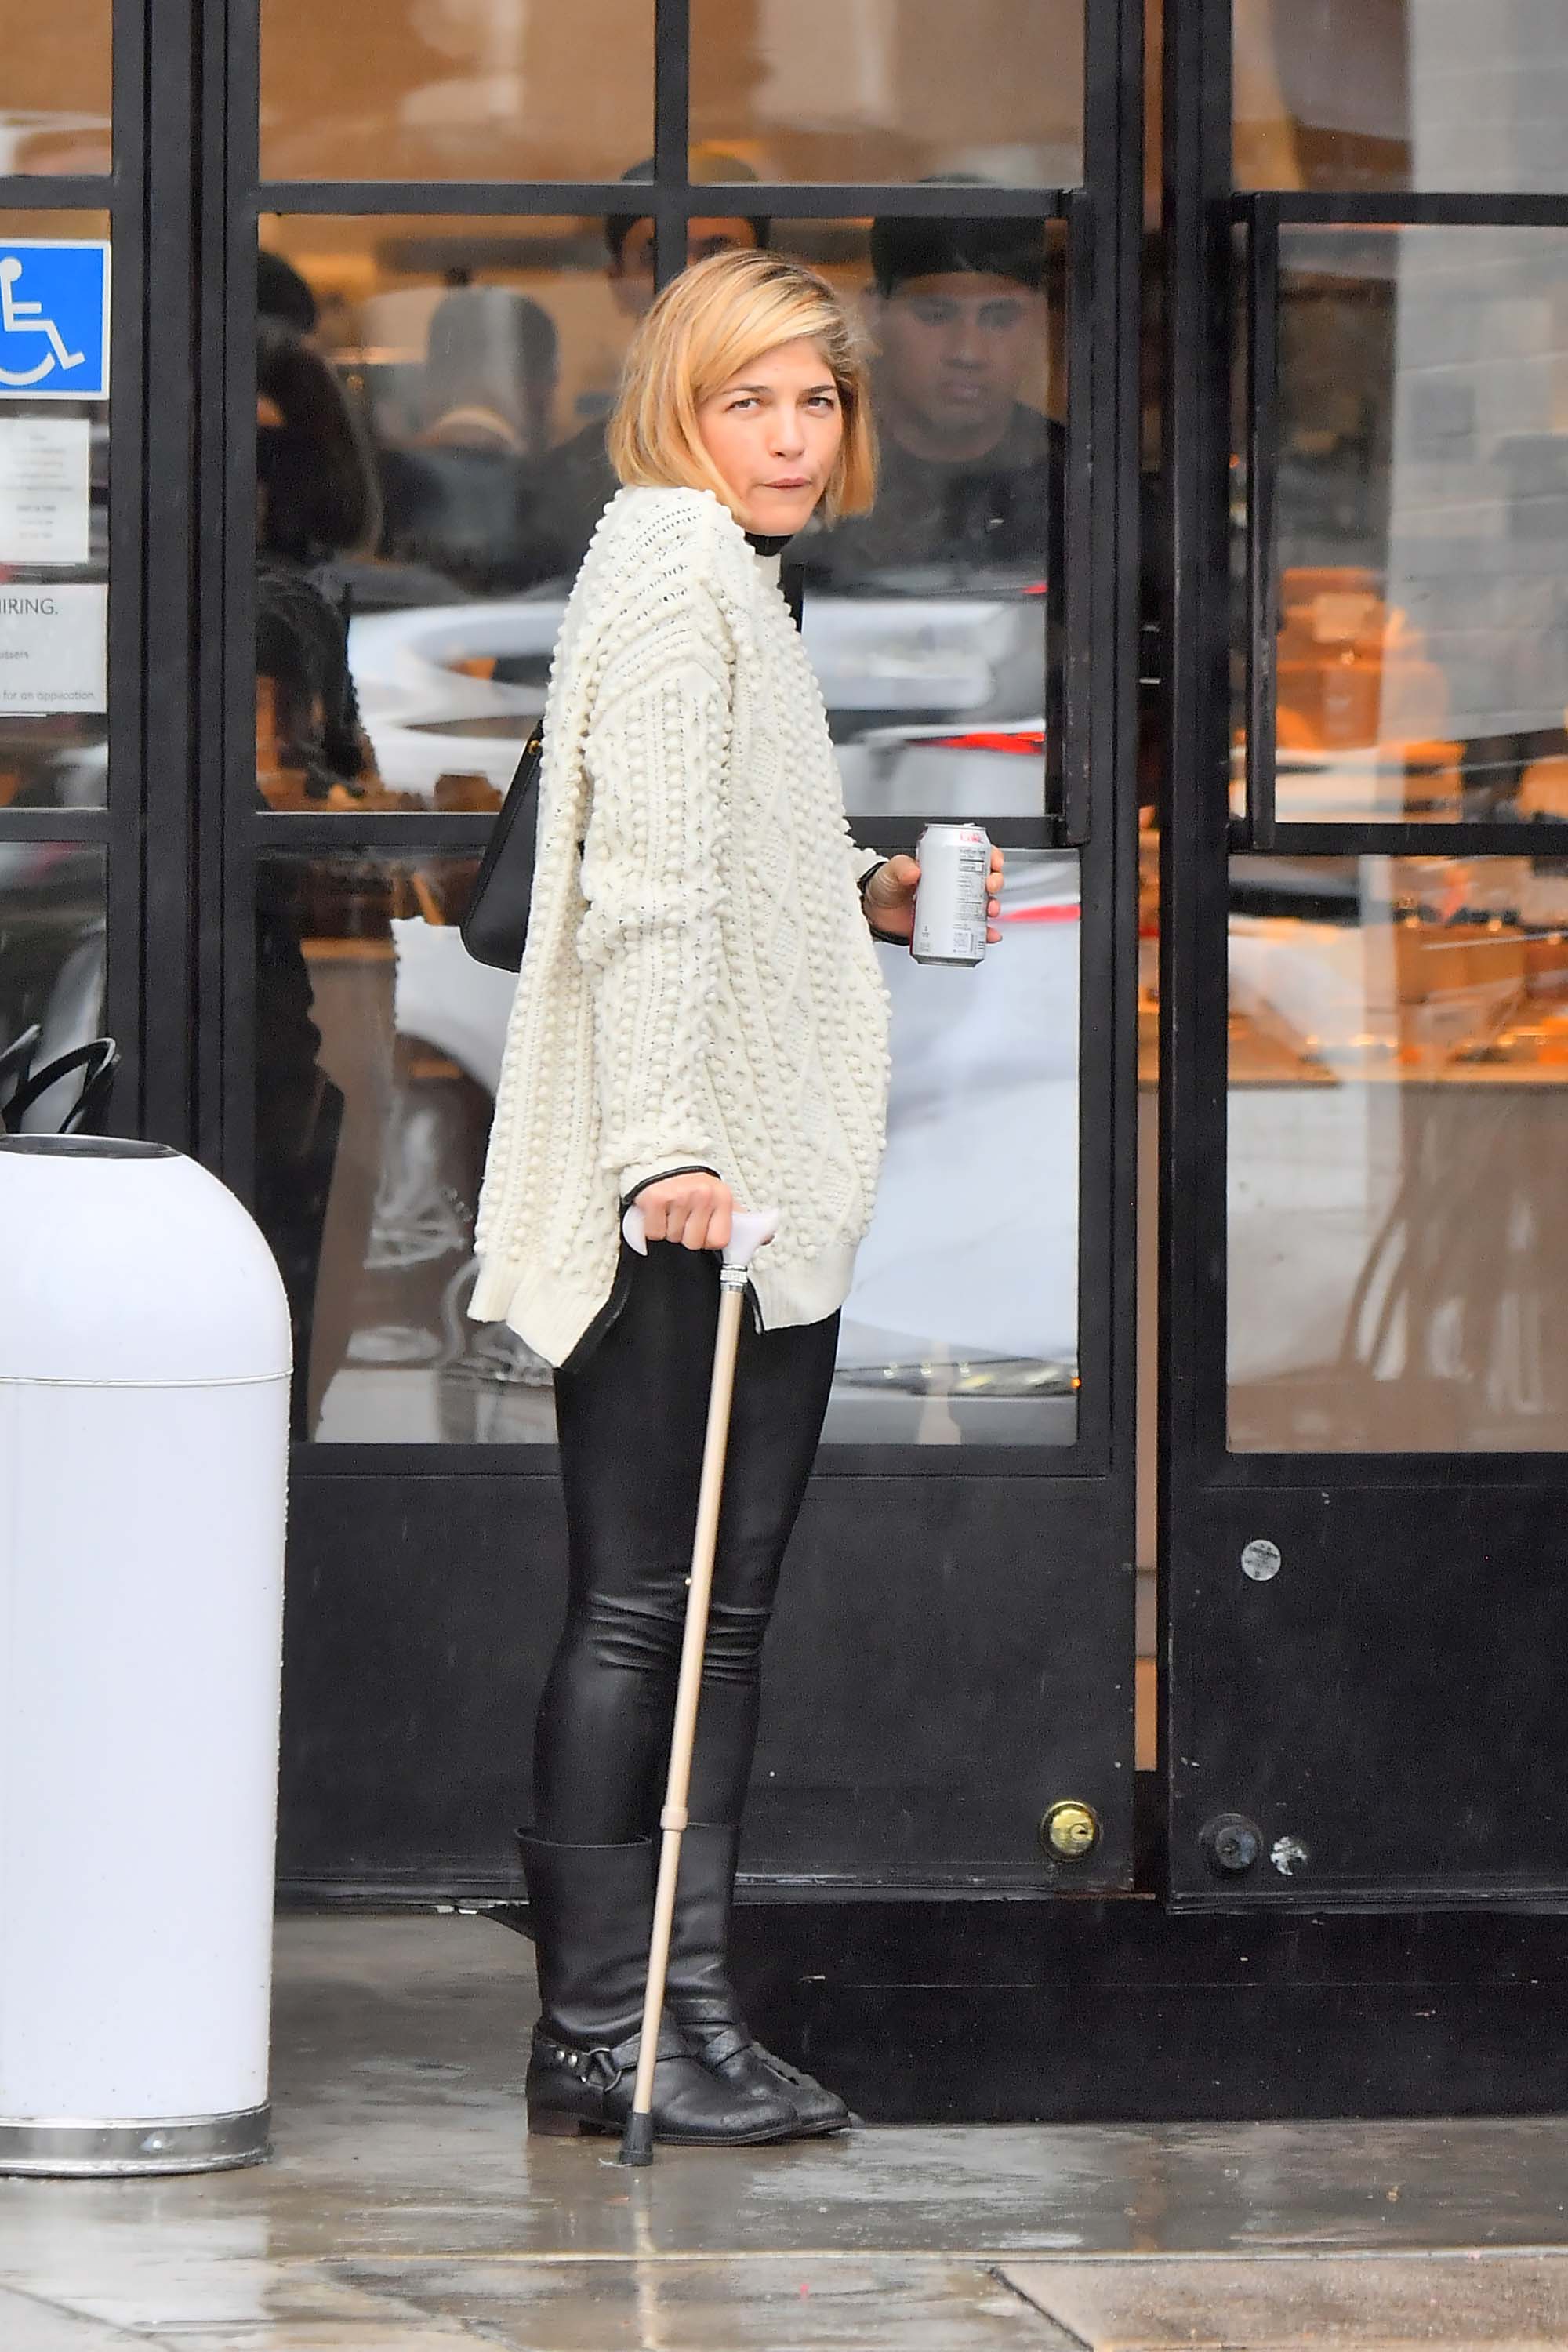 Selma Blair uses a cane leaving a restaurant